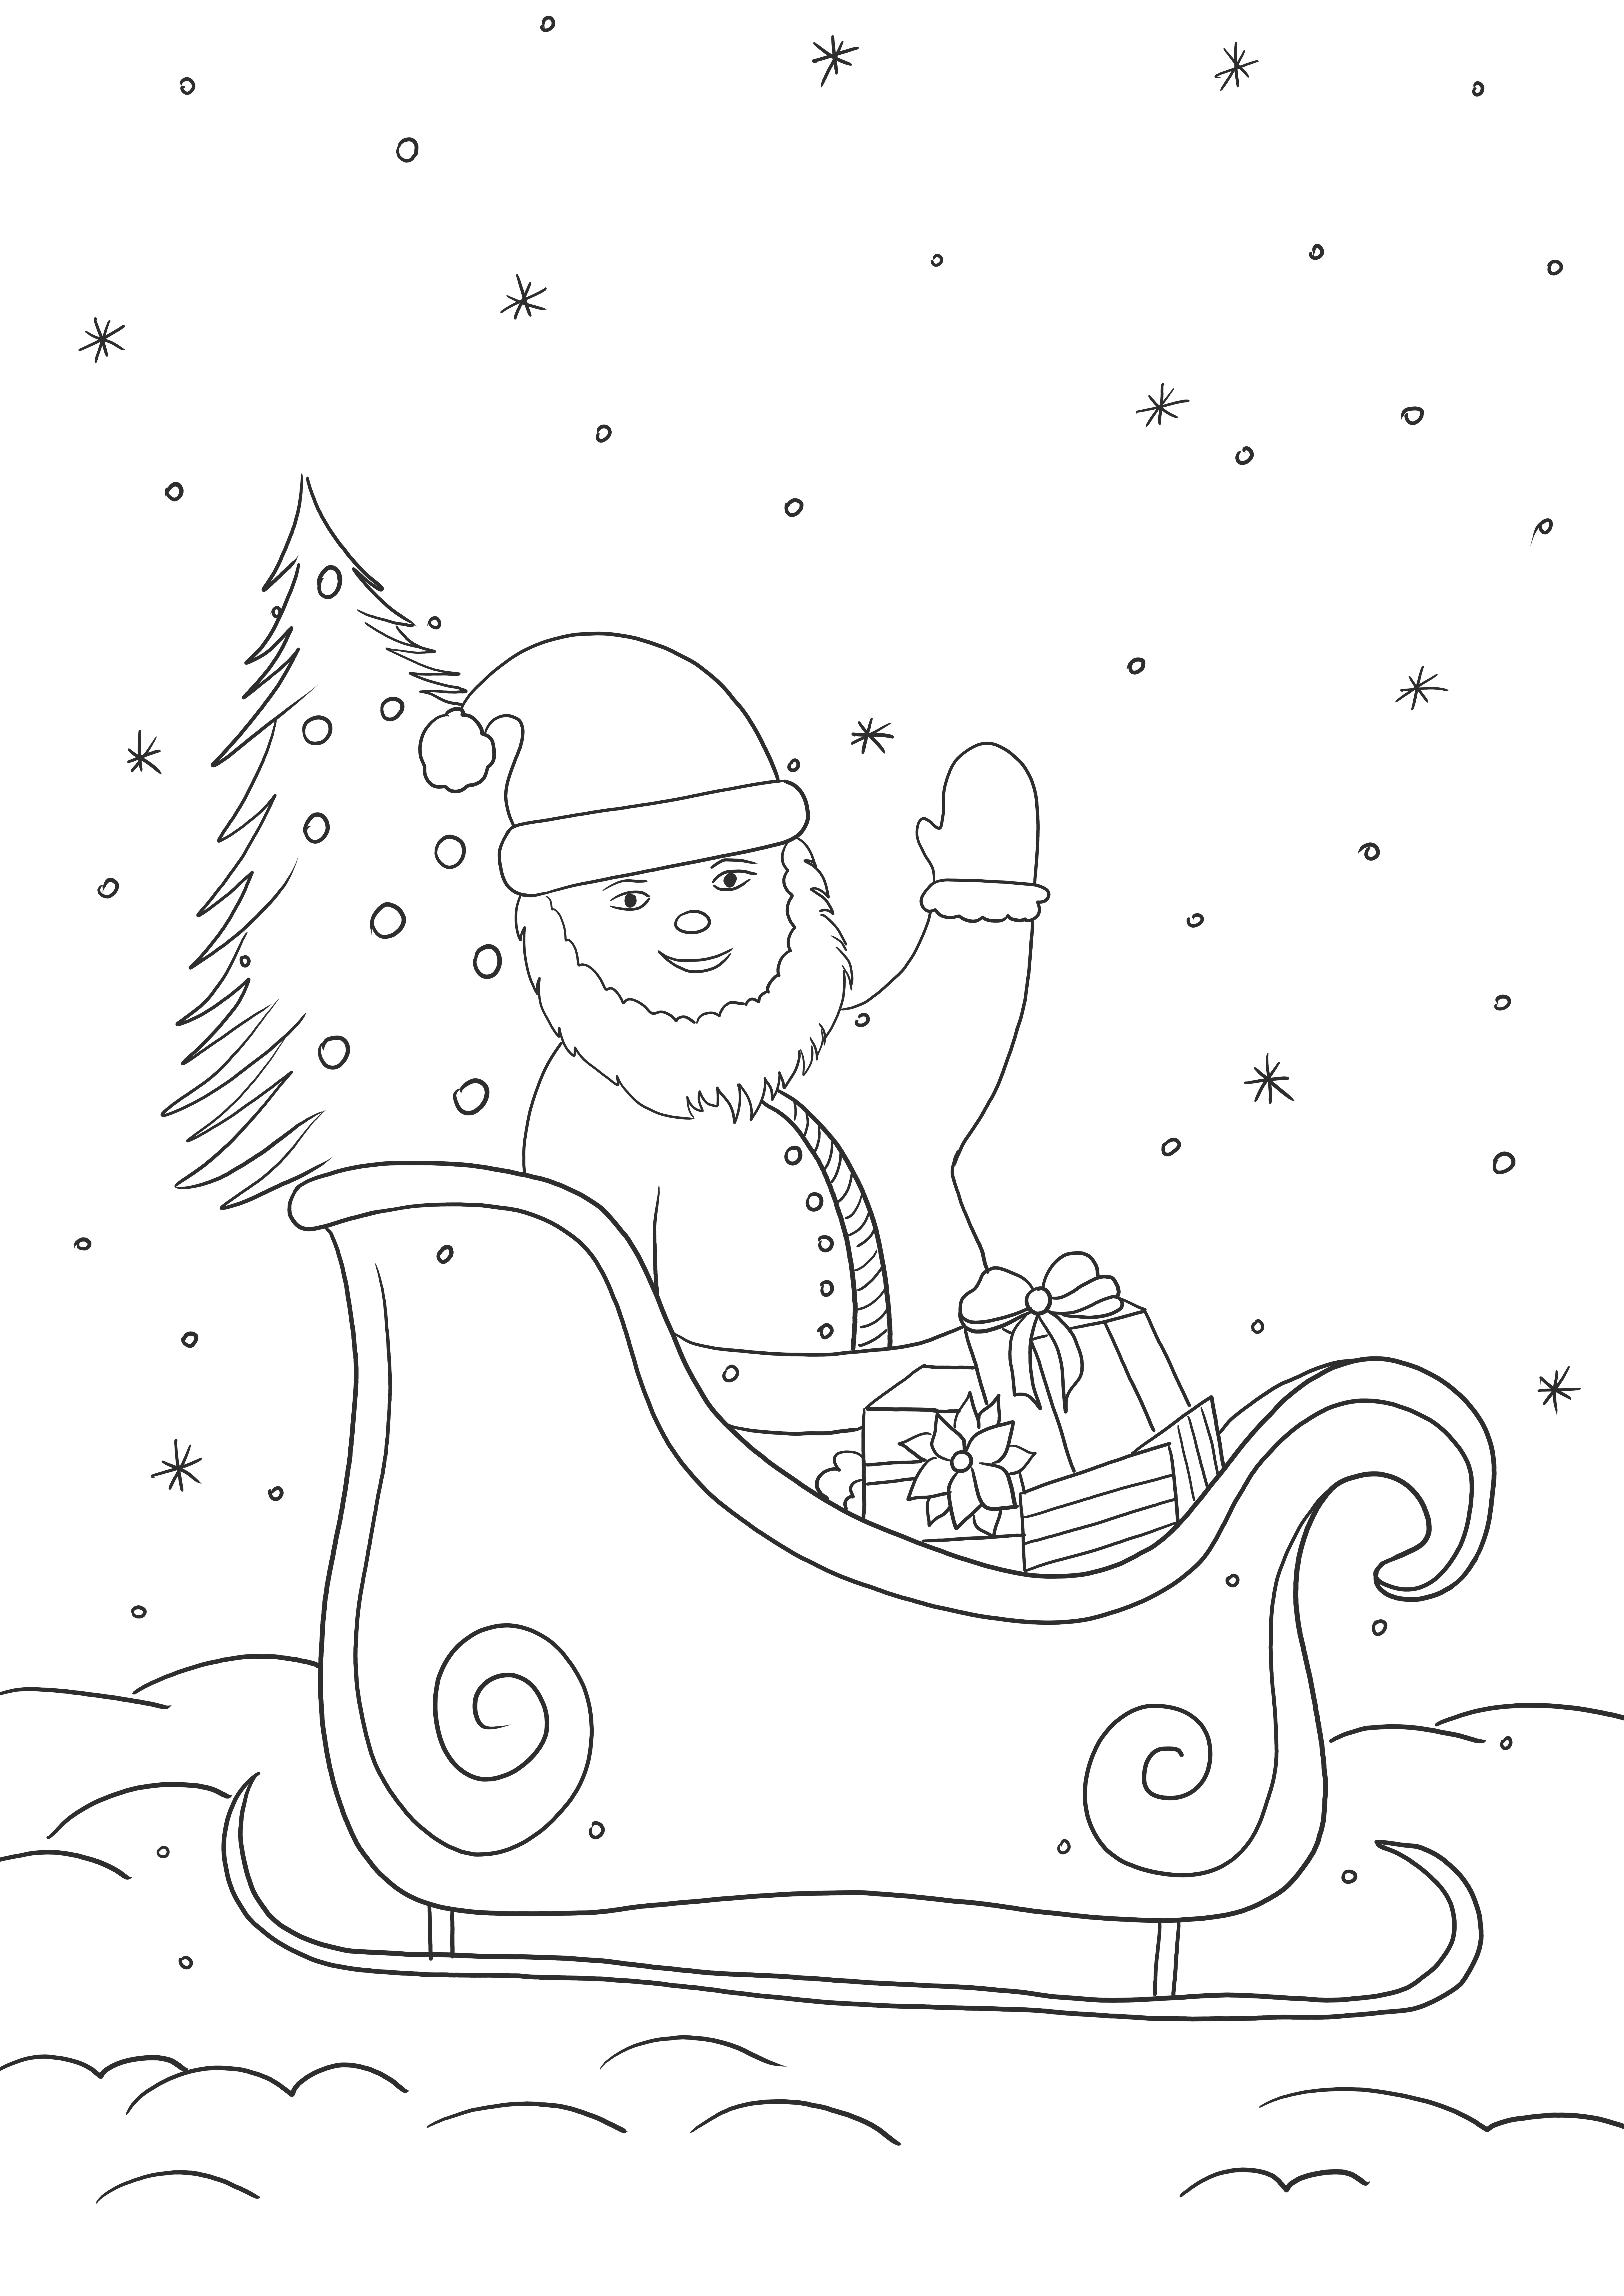 Ho-Ho-Ho-Santa on Sleigh nadchodzi za darmo do druku do kolorowania dla dzieci